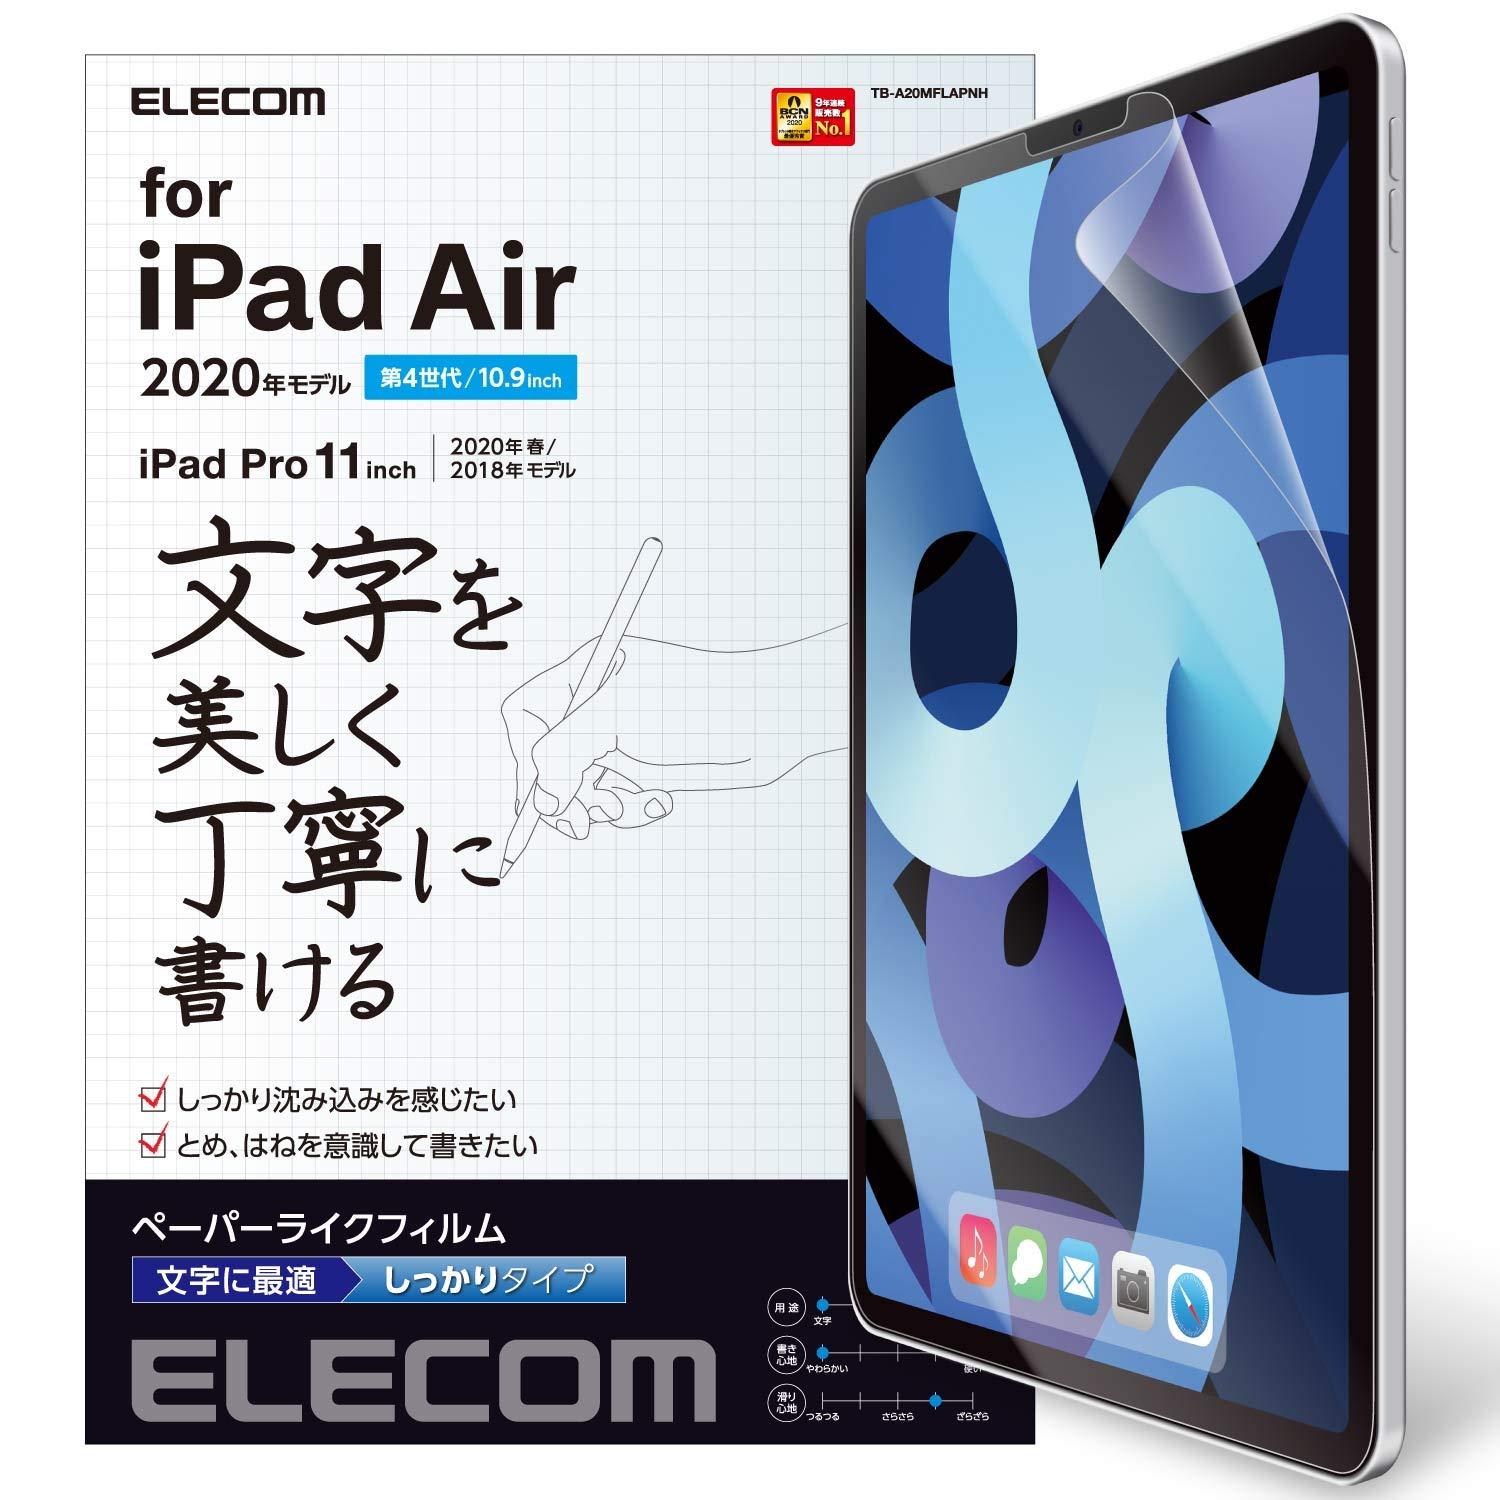 iPad Air 10.9(4/2020)y[p[CNtBp(TB-A20MFLAPNH)